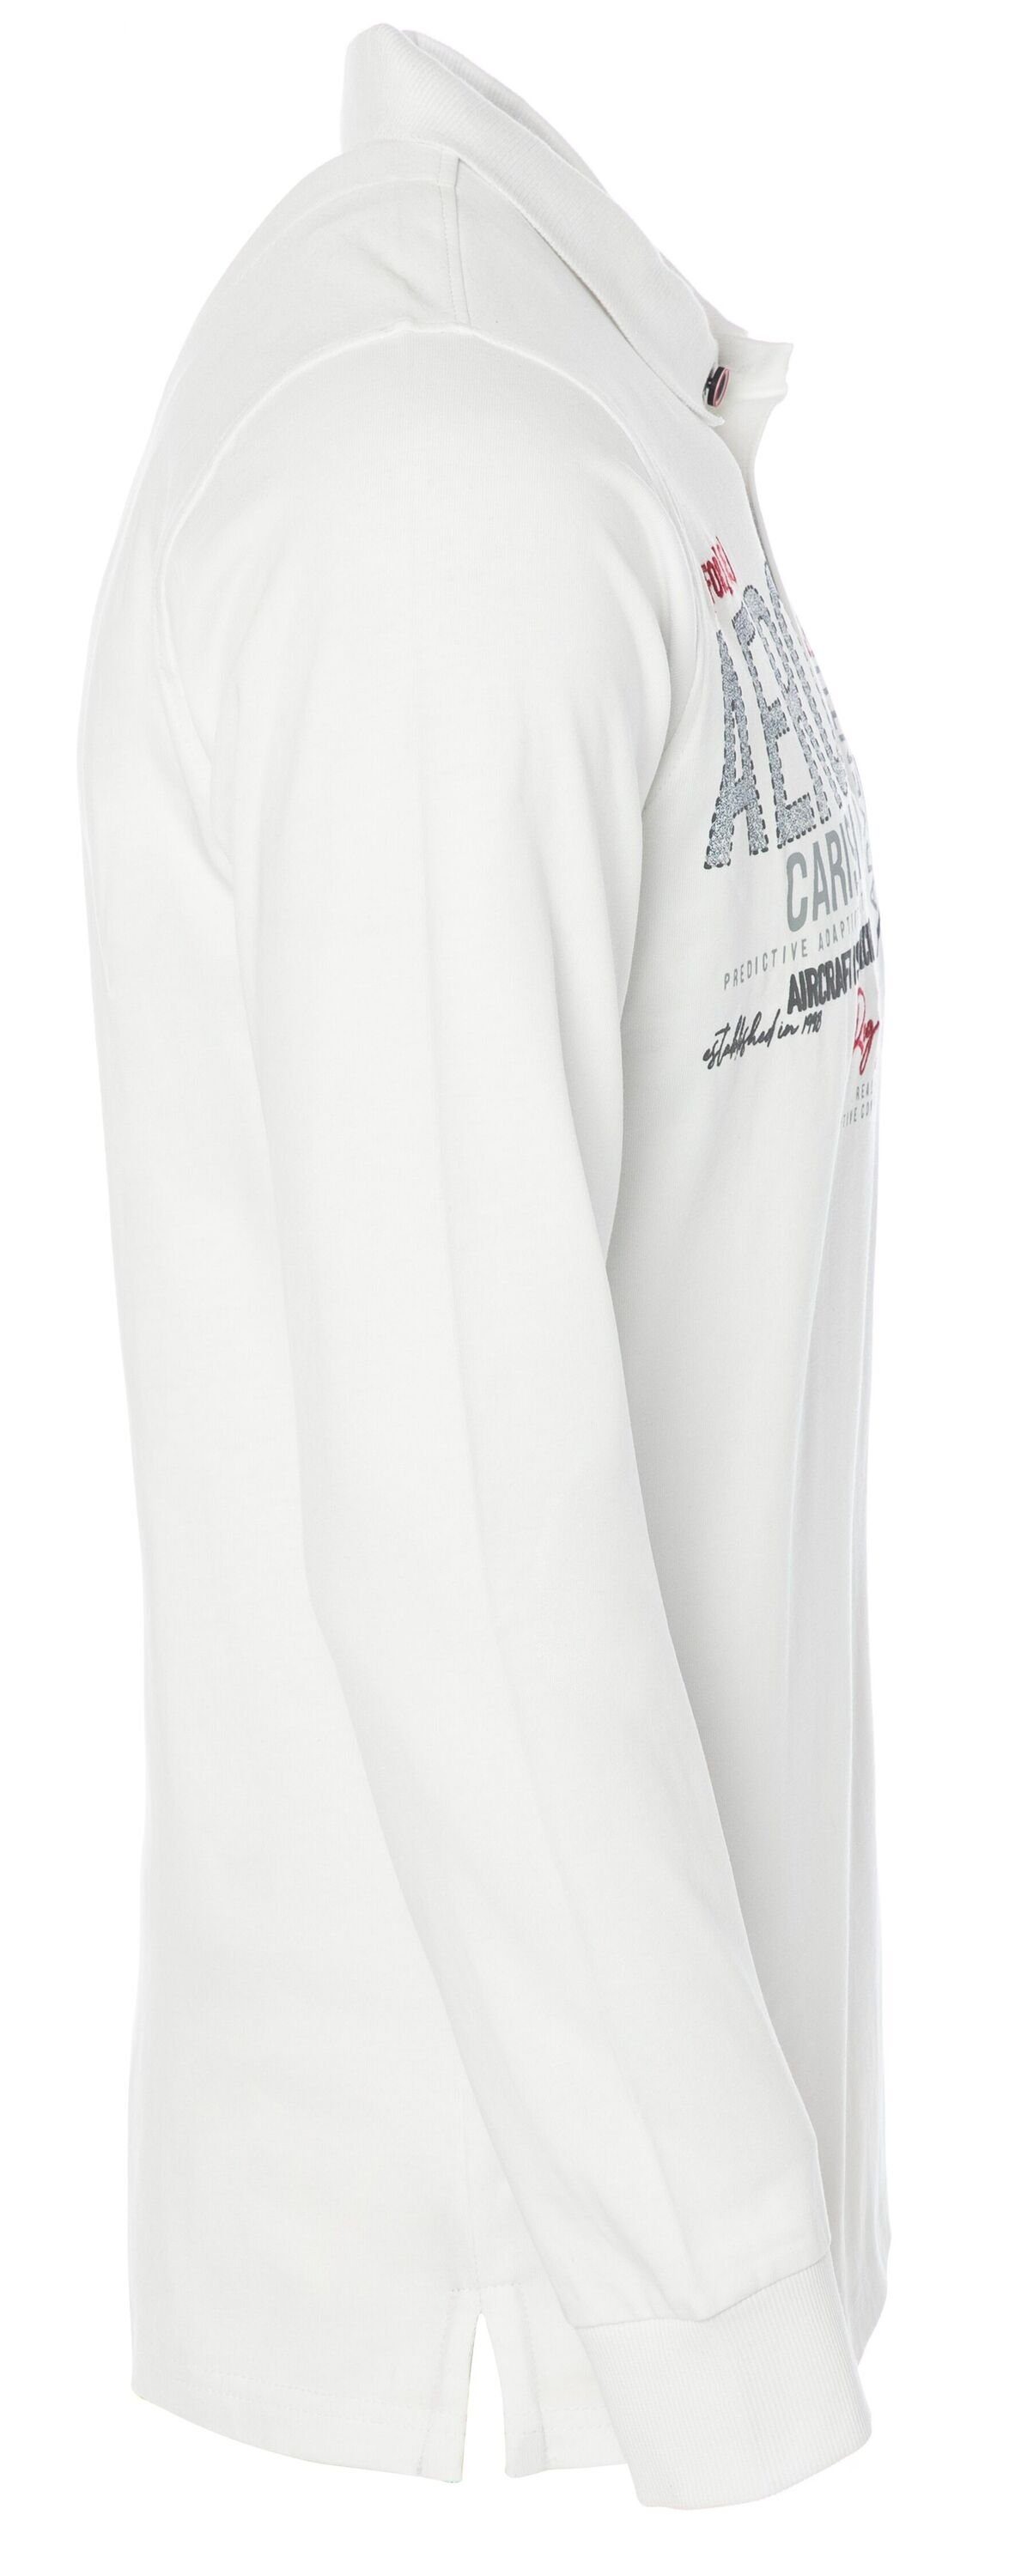 Poloshirt Premium CARISMA Langarmpolo White